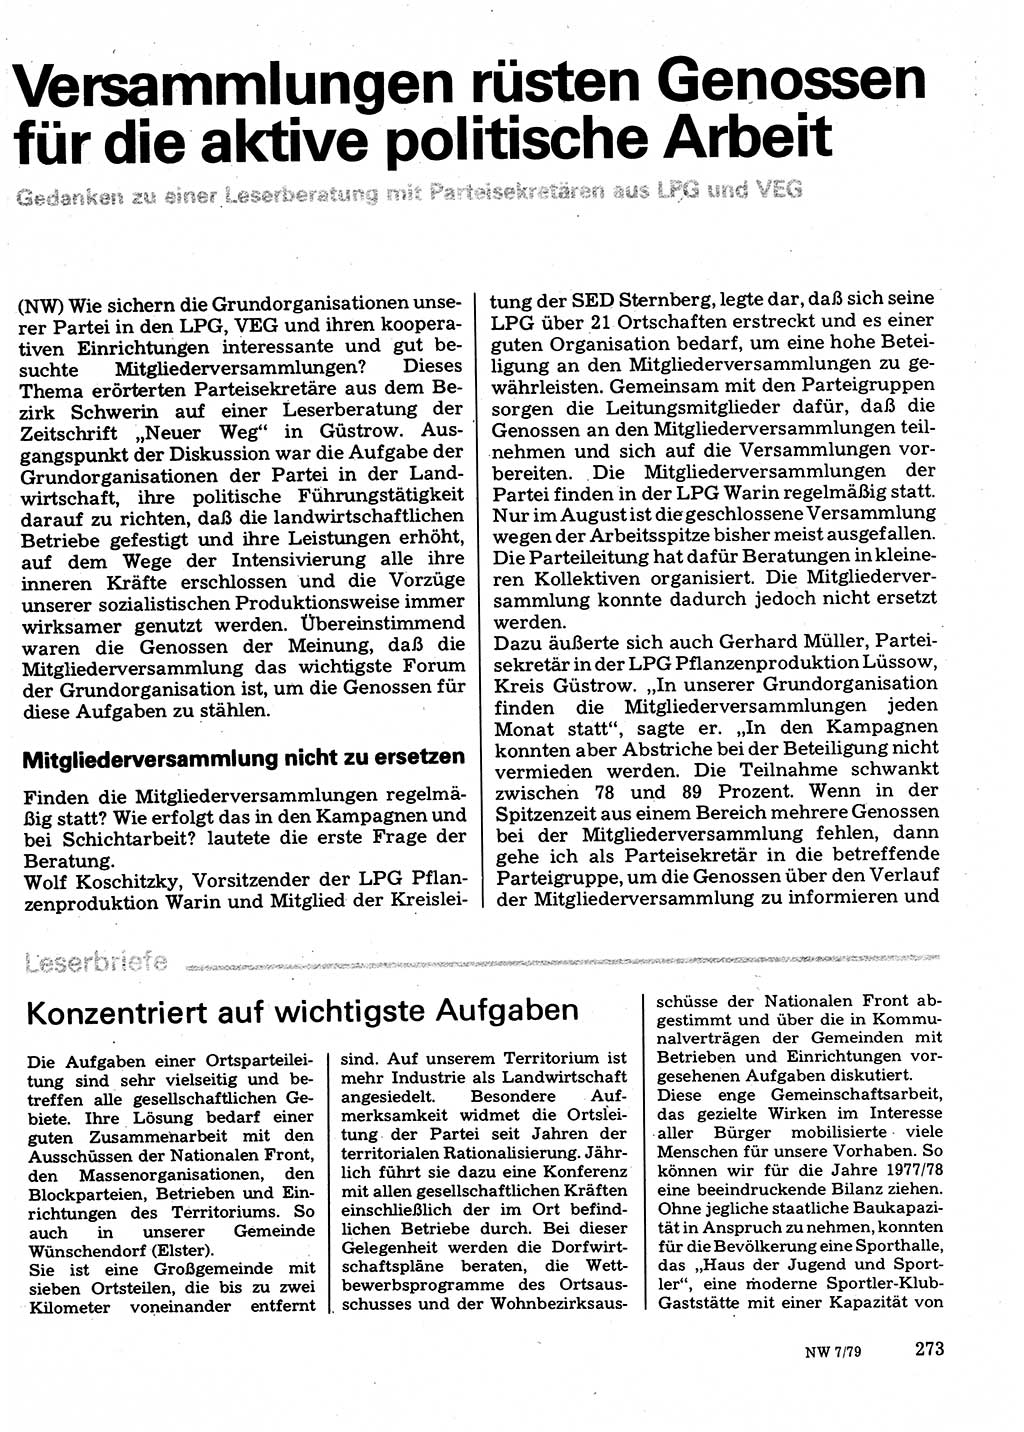 Neuer Weg (NW), Organ des Zentralkomitees (ZK) der SED (Sozialistische Einheitspartei Deutschlands) für Fragen des Parteilebens, 34. Jahrgang [Deutsche Demokratische Republik (DDR)] 1979, Seite 273 (NW ZK SED DDR 1979, S. 273)